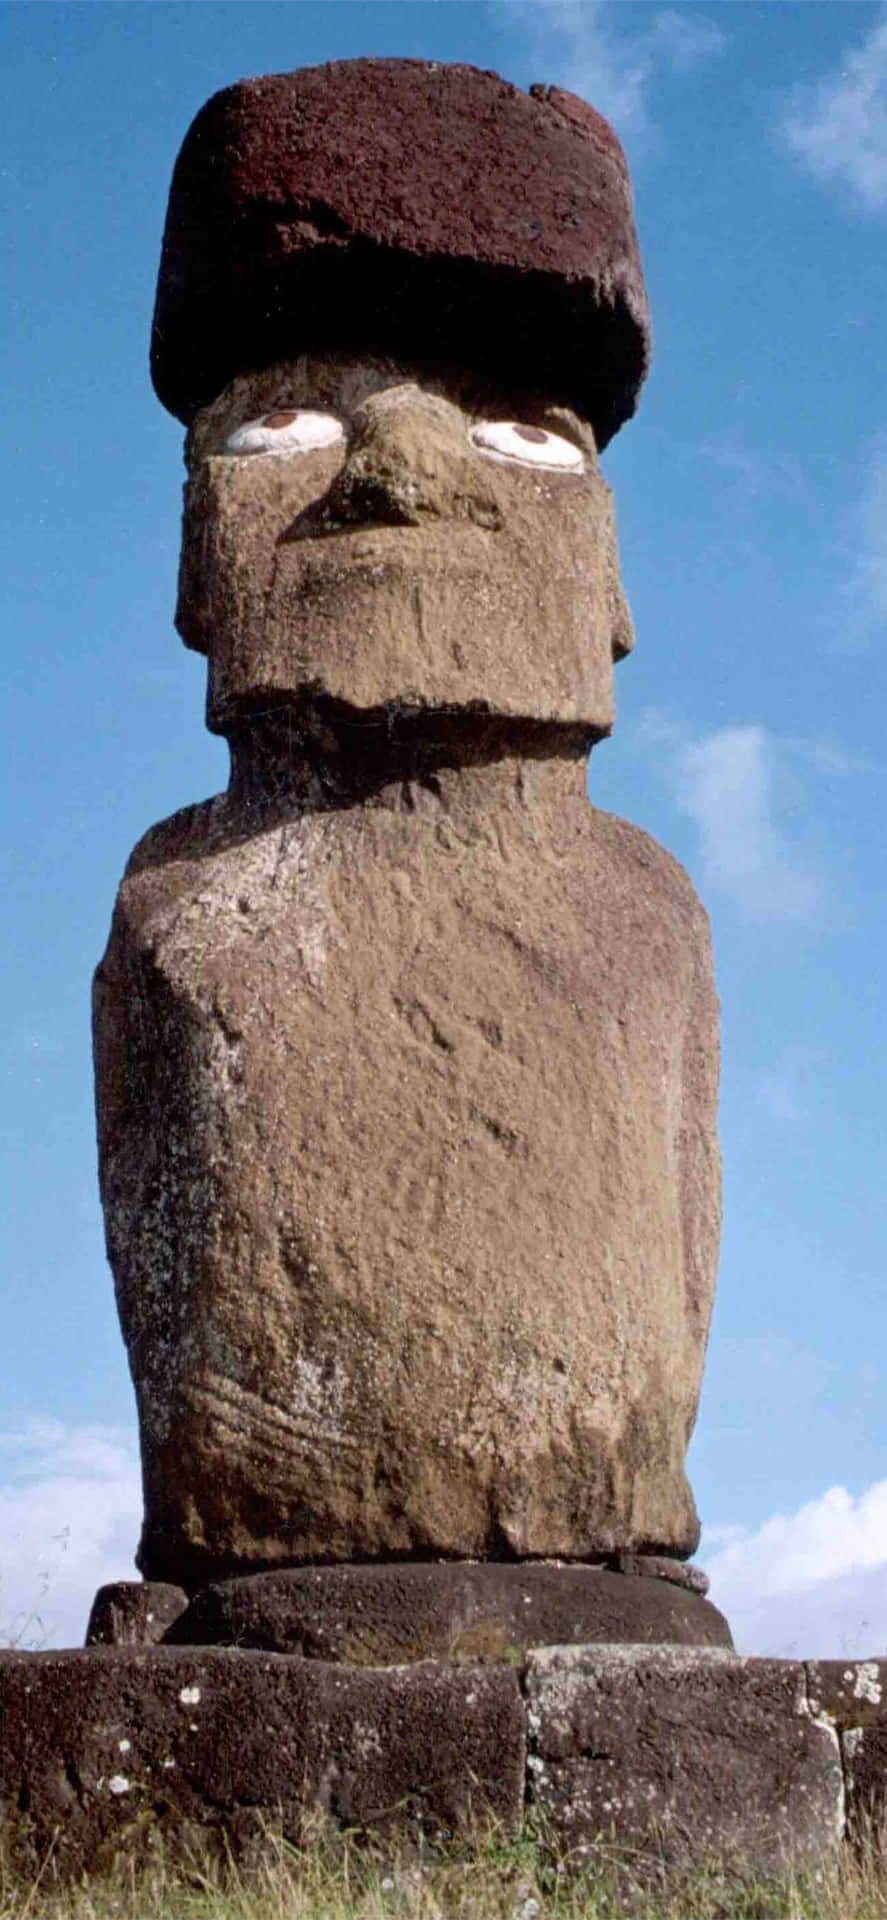 Moai 1242 X 2688 Wallpaper